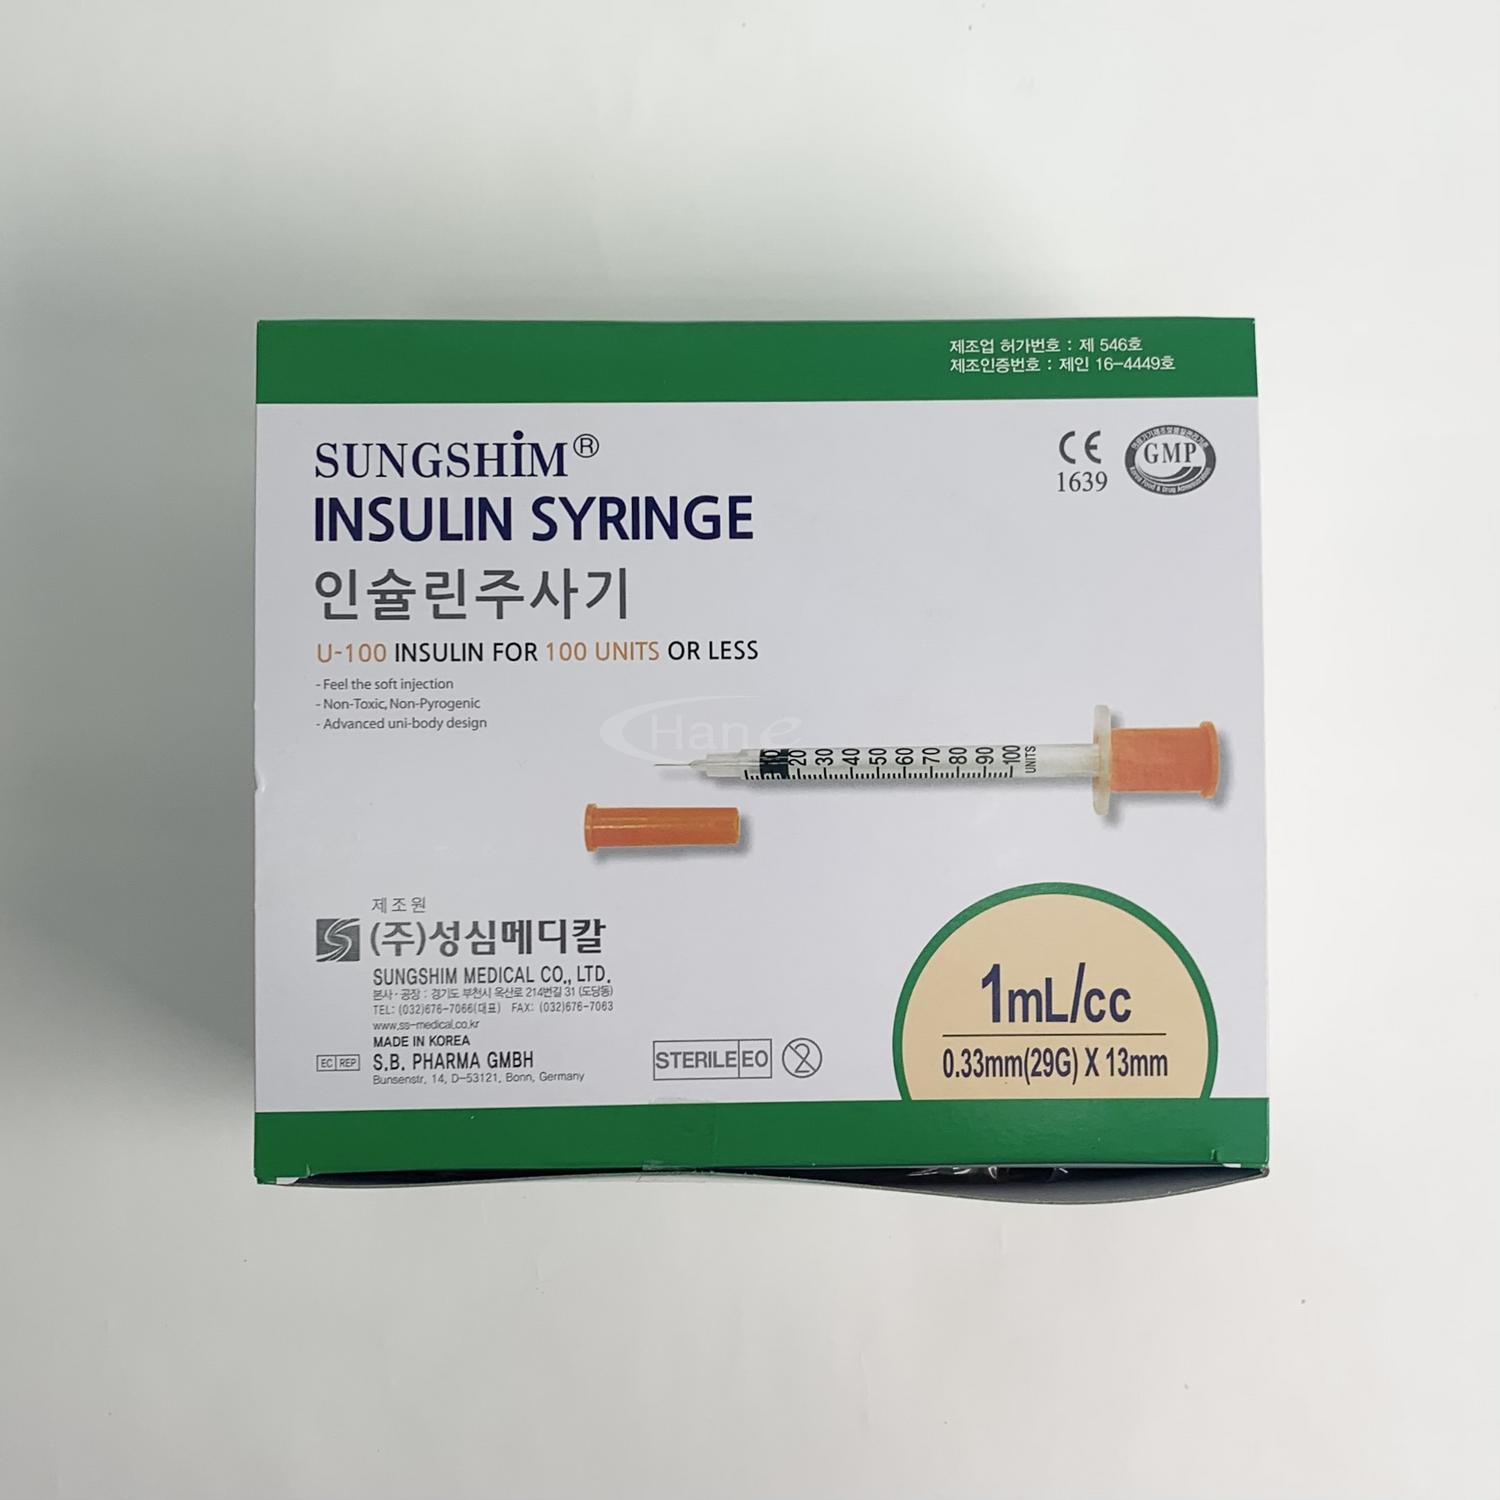 [성심]인슐린주사기 (1ml 31G*8mm)